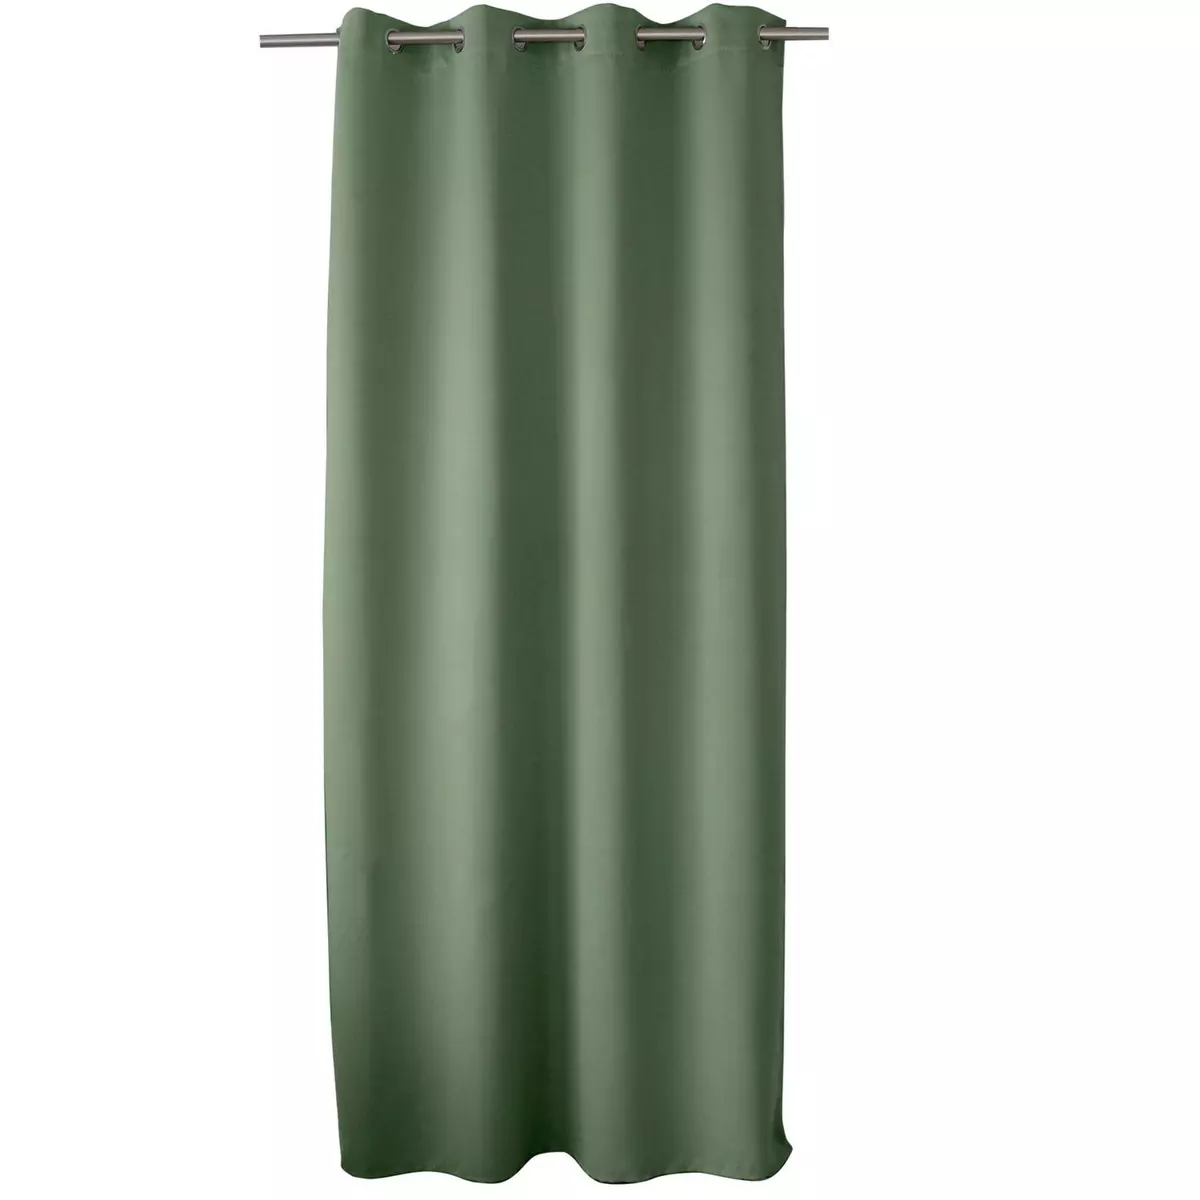 TOILINUX Rideau occultant Basic à 8 œillets - Longueur 240 cm x Largeur 140 cm - Vert Argile